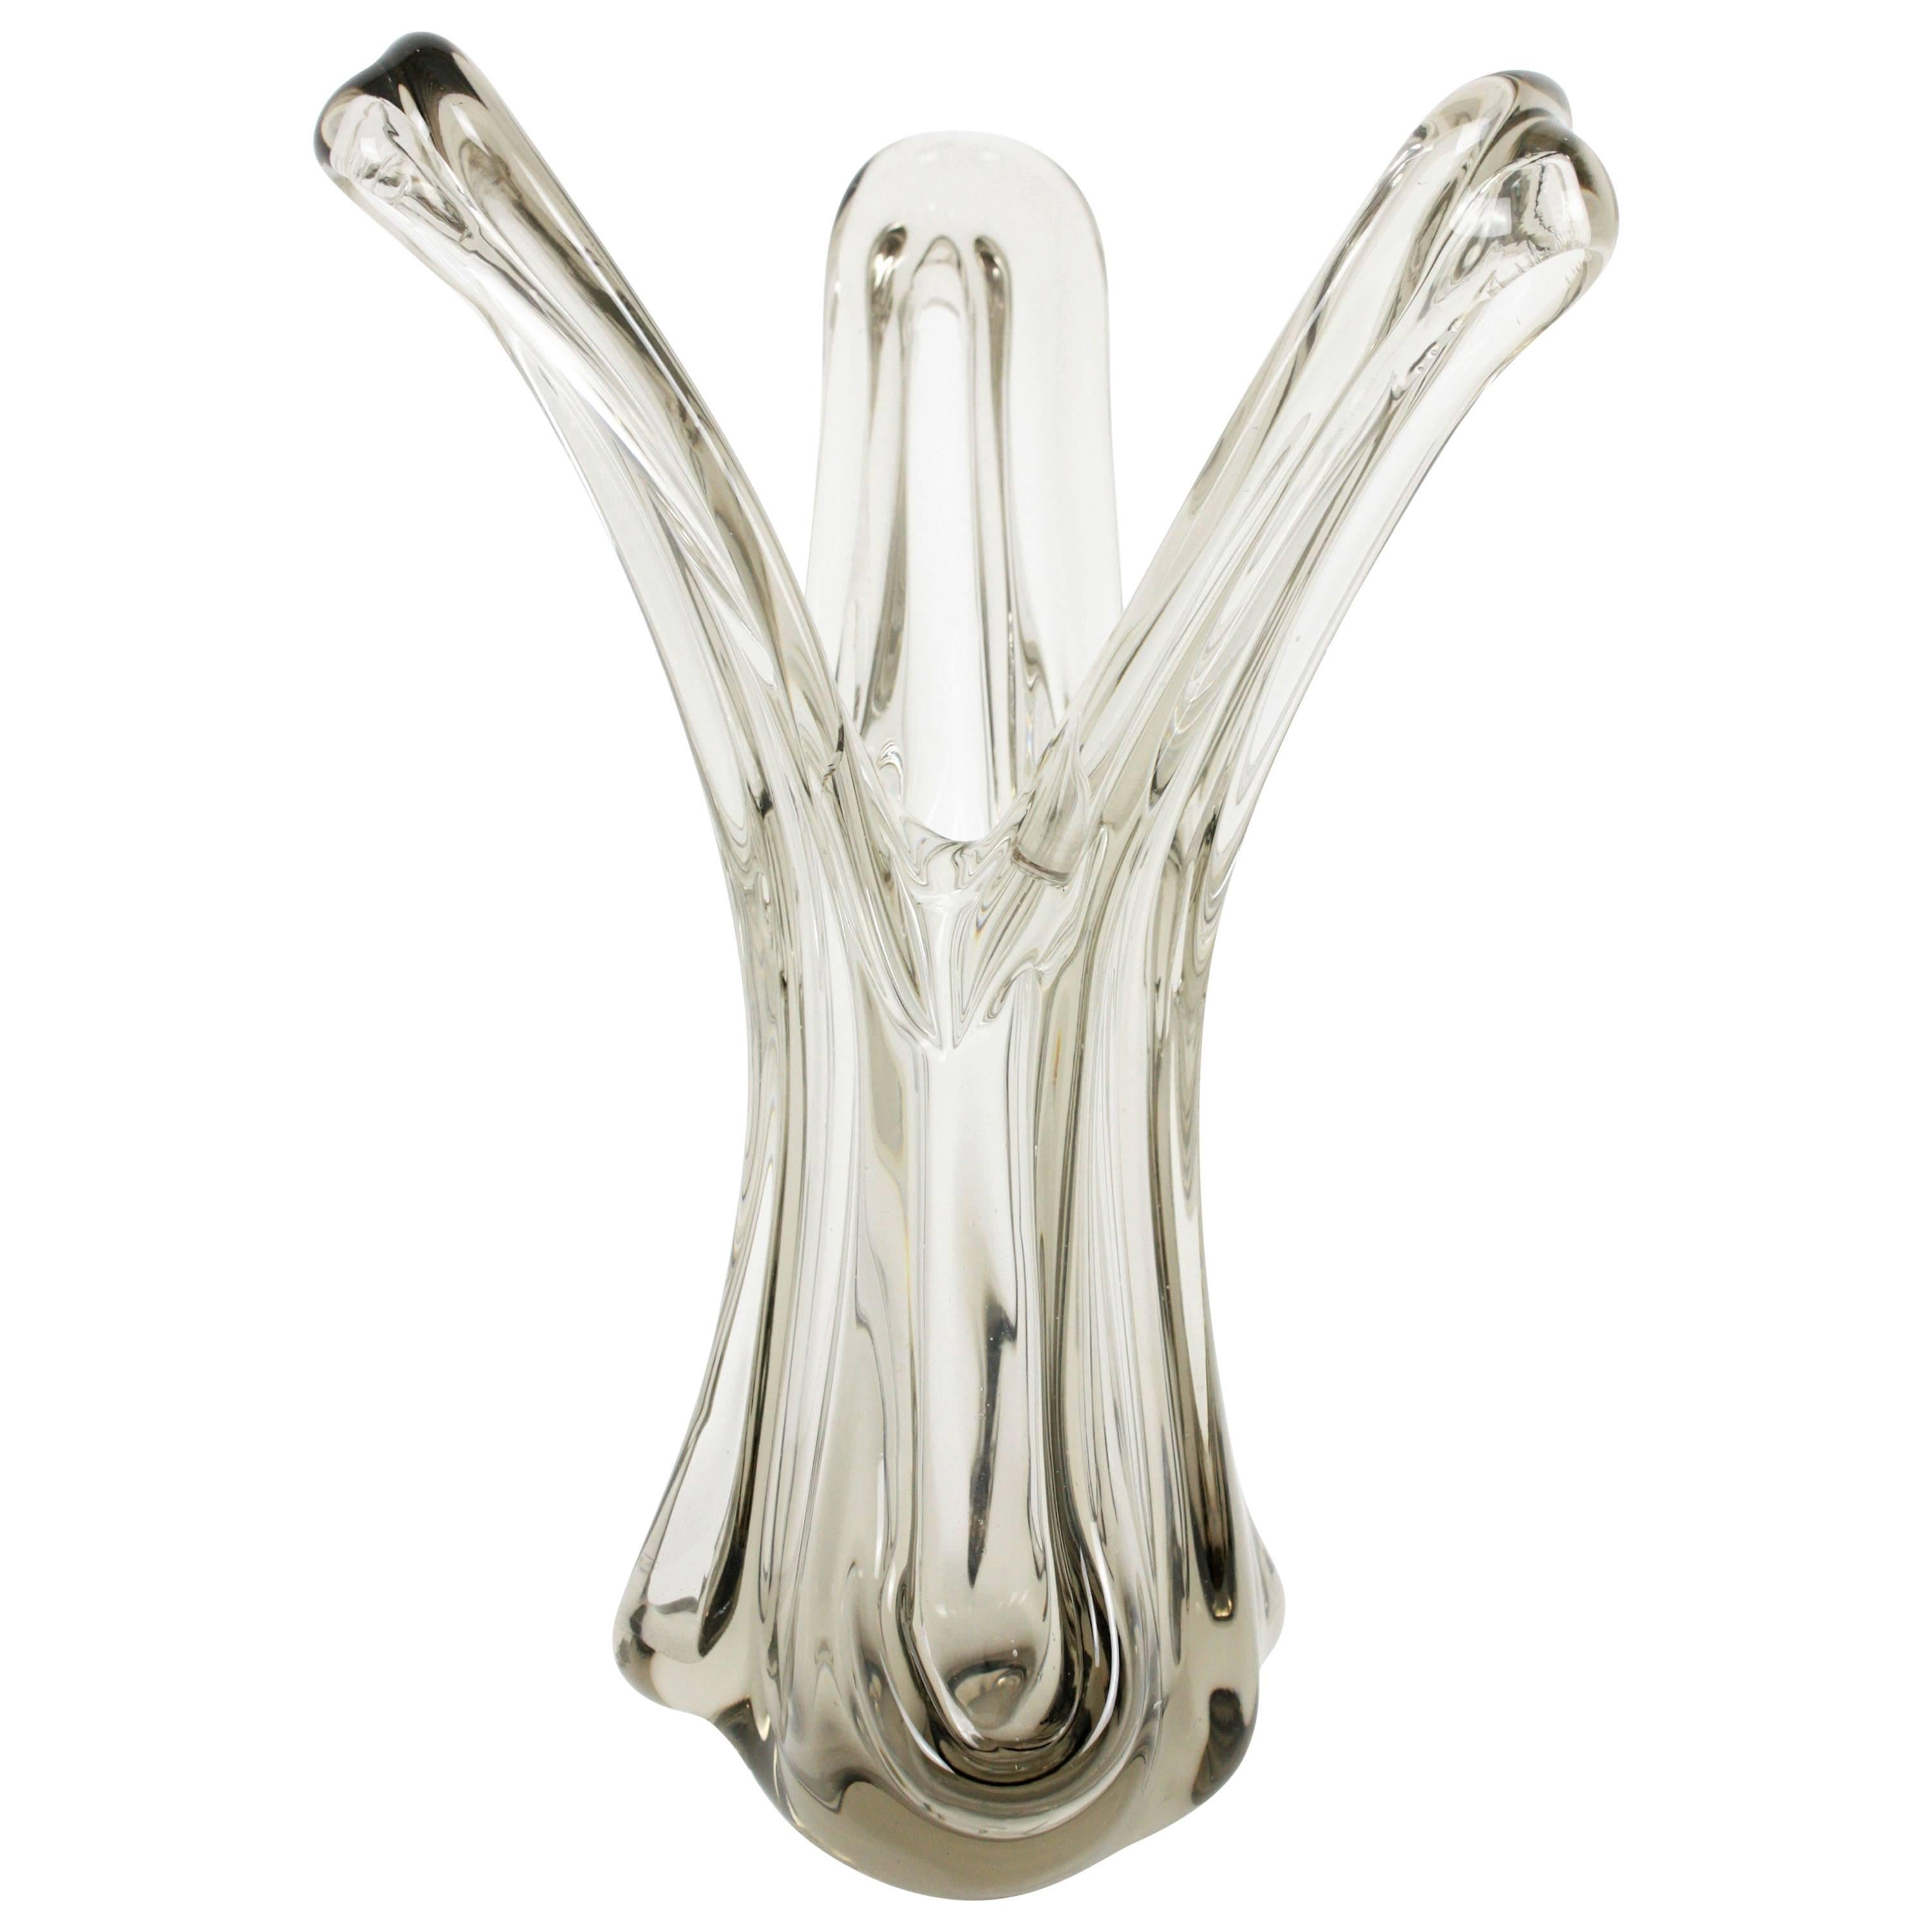 Eine skulpturale mundgeblasene offene Vase aus italienischem Murano-Glas in Klar- und Rauchglas. Italien, 1960er Jahre.
Das organische Design mit seinen gewundenen Formen ist sehr dekorativ. 
Wunderschön als dekoratives Mittelstück oder als Vase